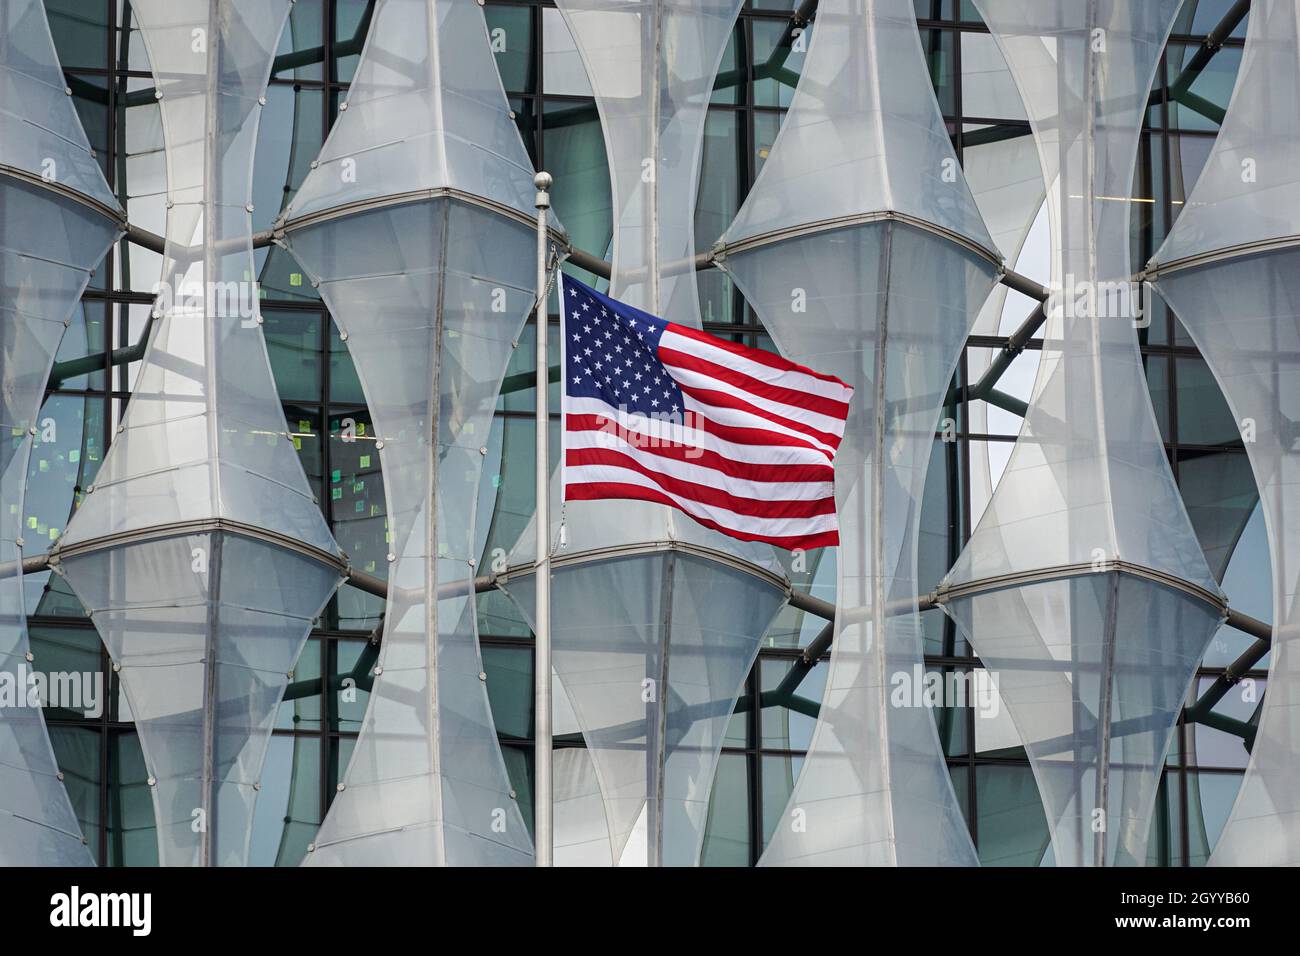 Amerikanische Flagge bei der Botschaft der Vereinigten Staaten von Amerika in Nine Elms, London England Vereinigtes Königreich Großbritannien Stockfoto